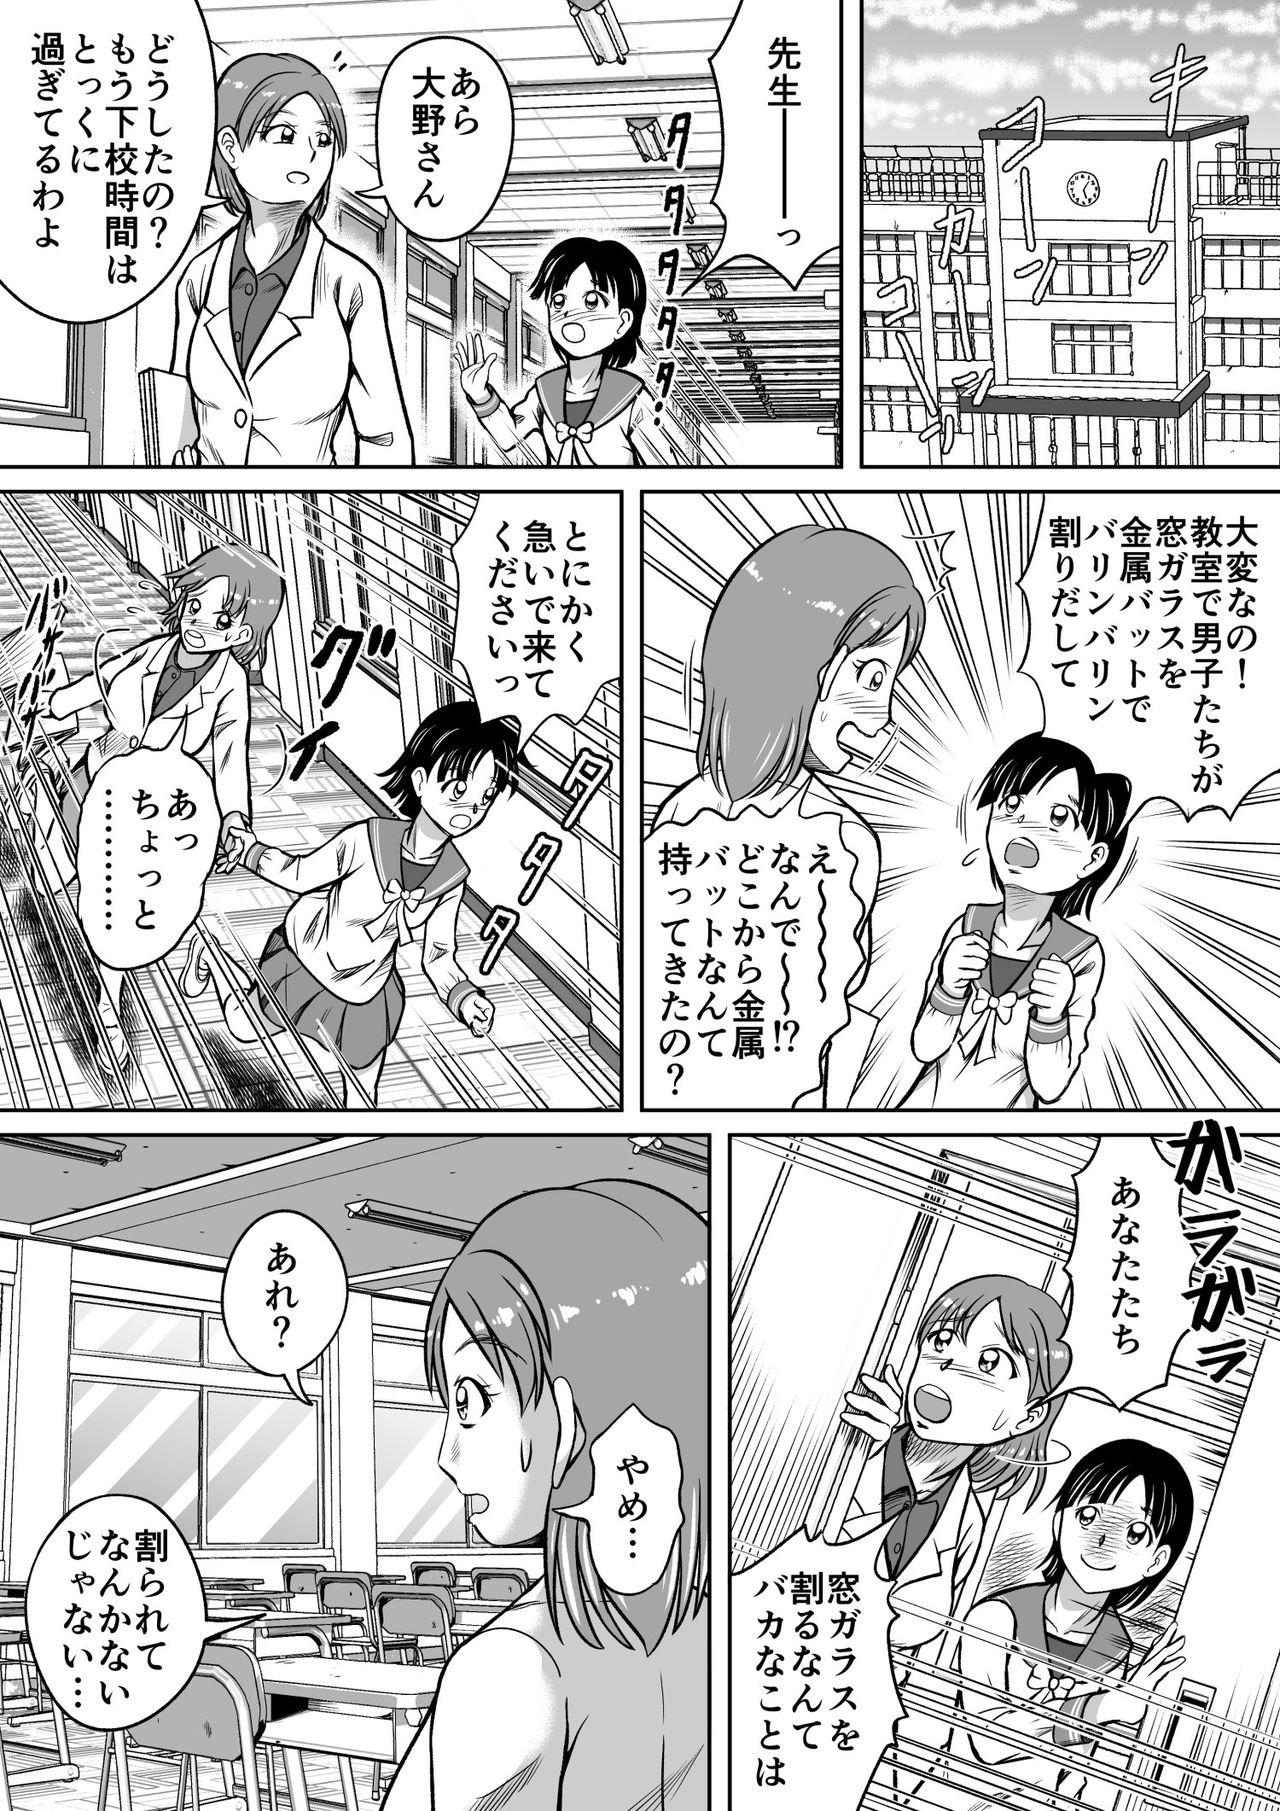 Boquete Do-S Misako Homosexual - Page 9